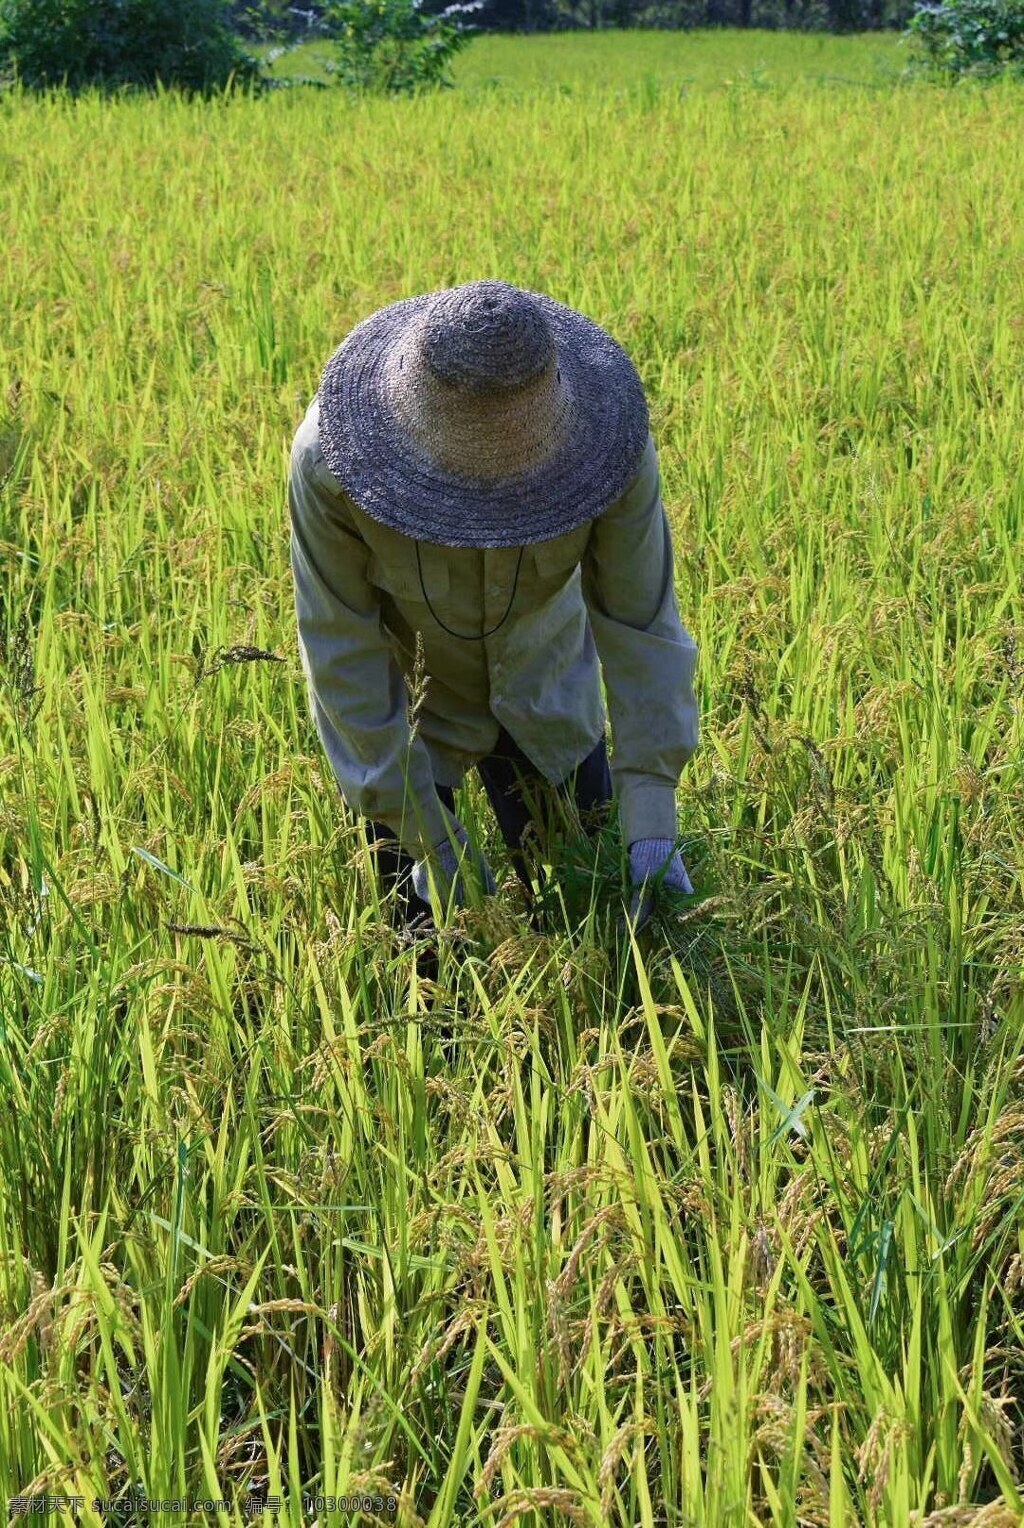 五常大米 稻田地图片 五常 大米 稻田地 老人 除草 自然景观 田园风光